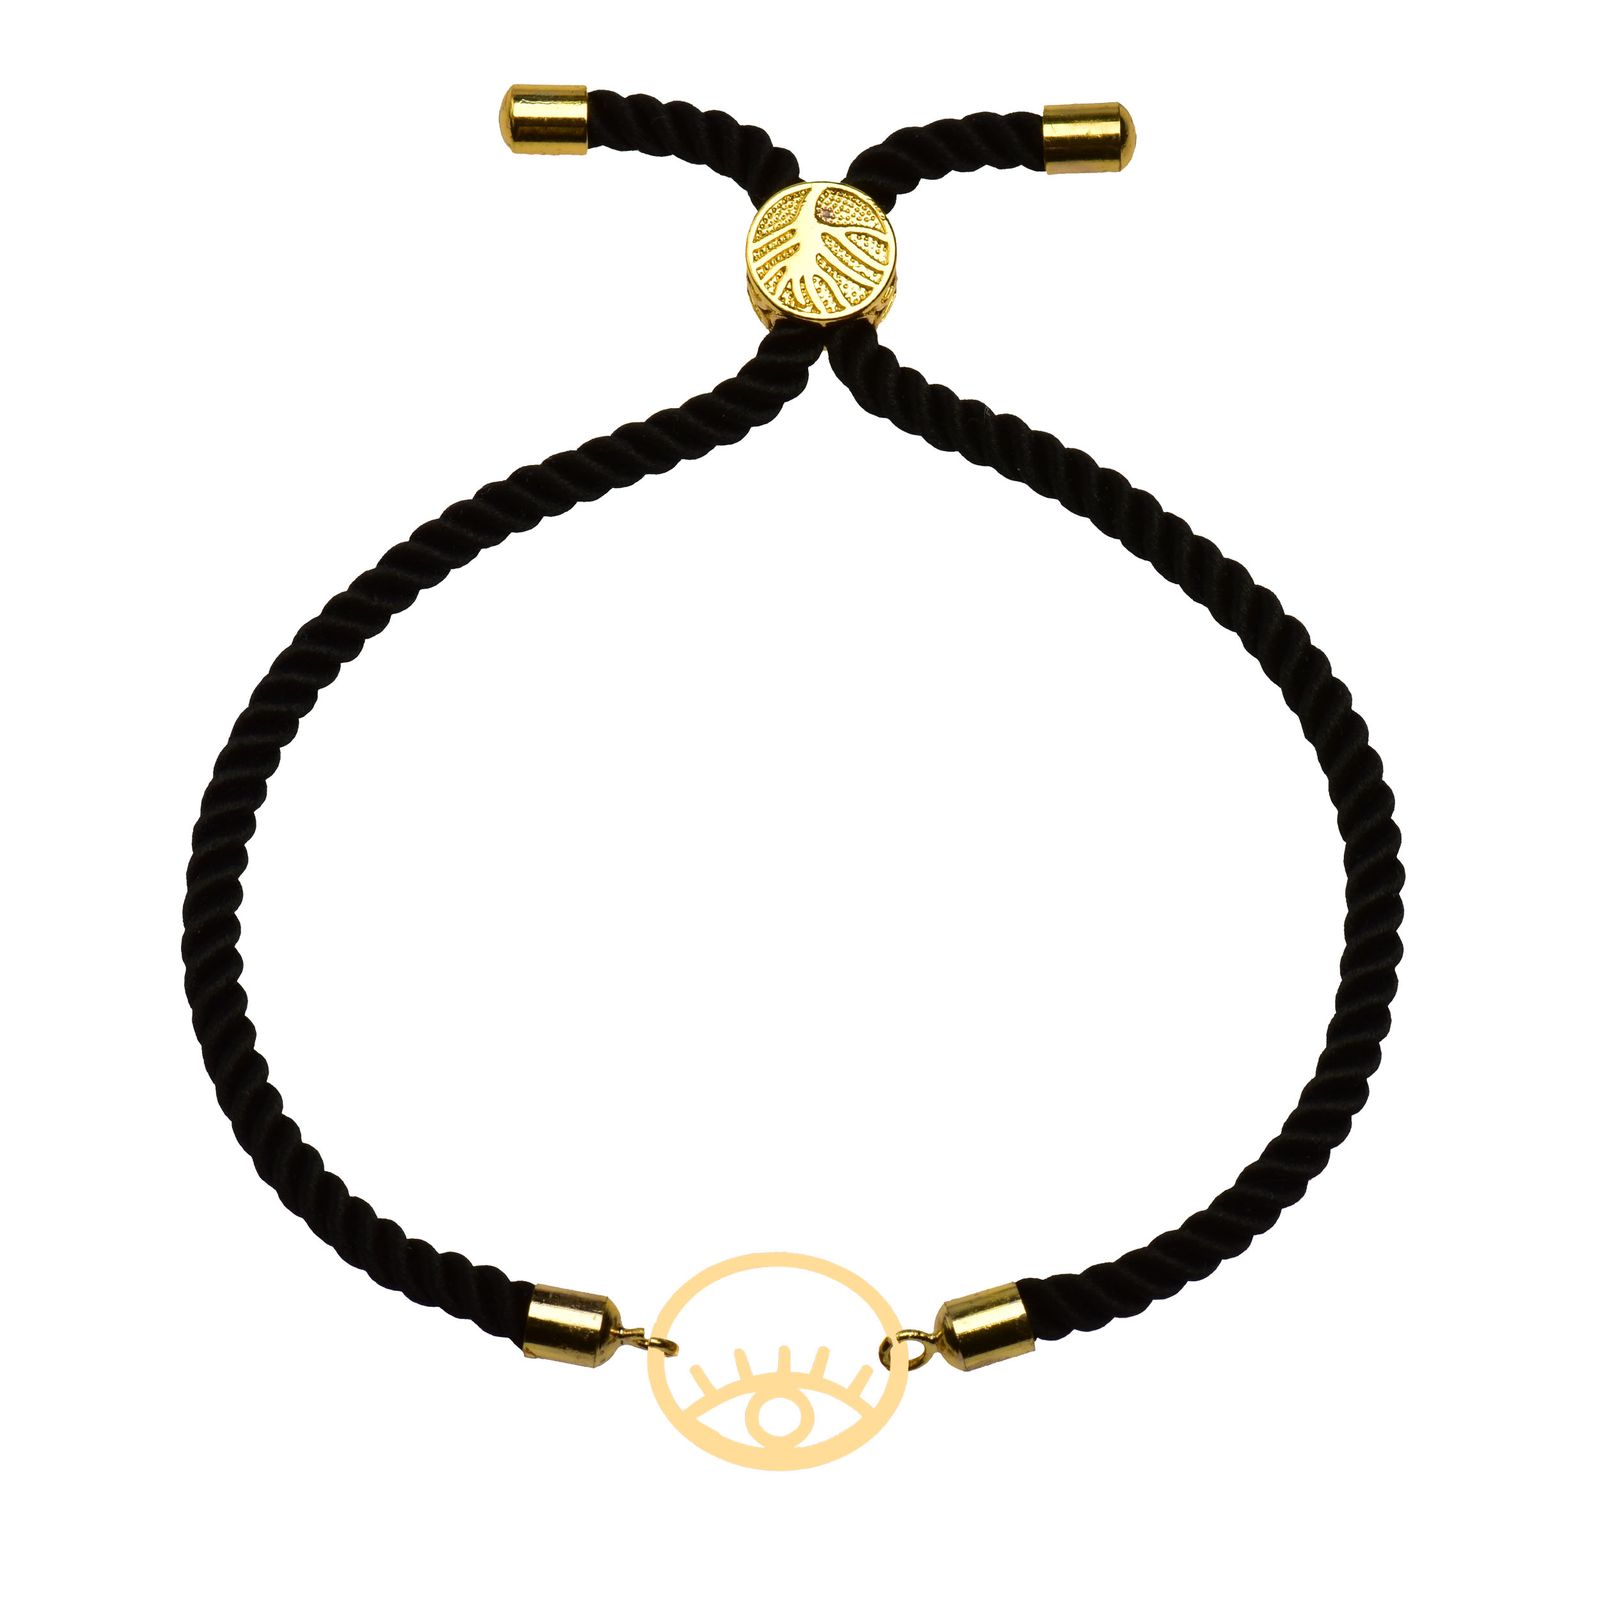 دستبند طلا 18 عیار زنانه کرابو طرح چشم نظر مدل Kr102214 -  - 1